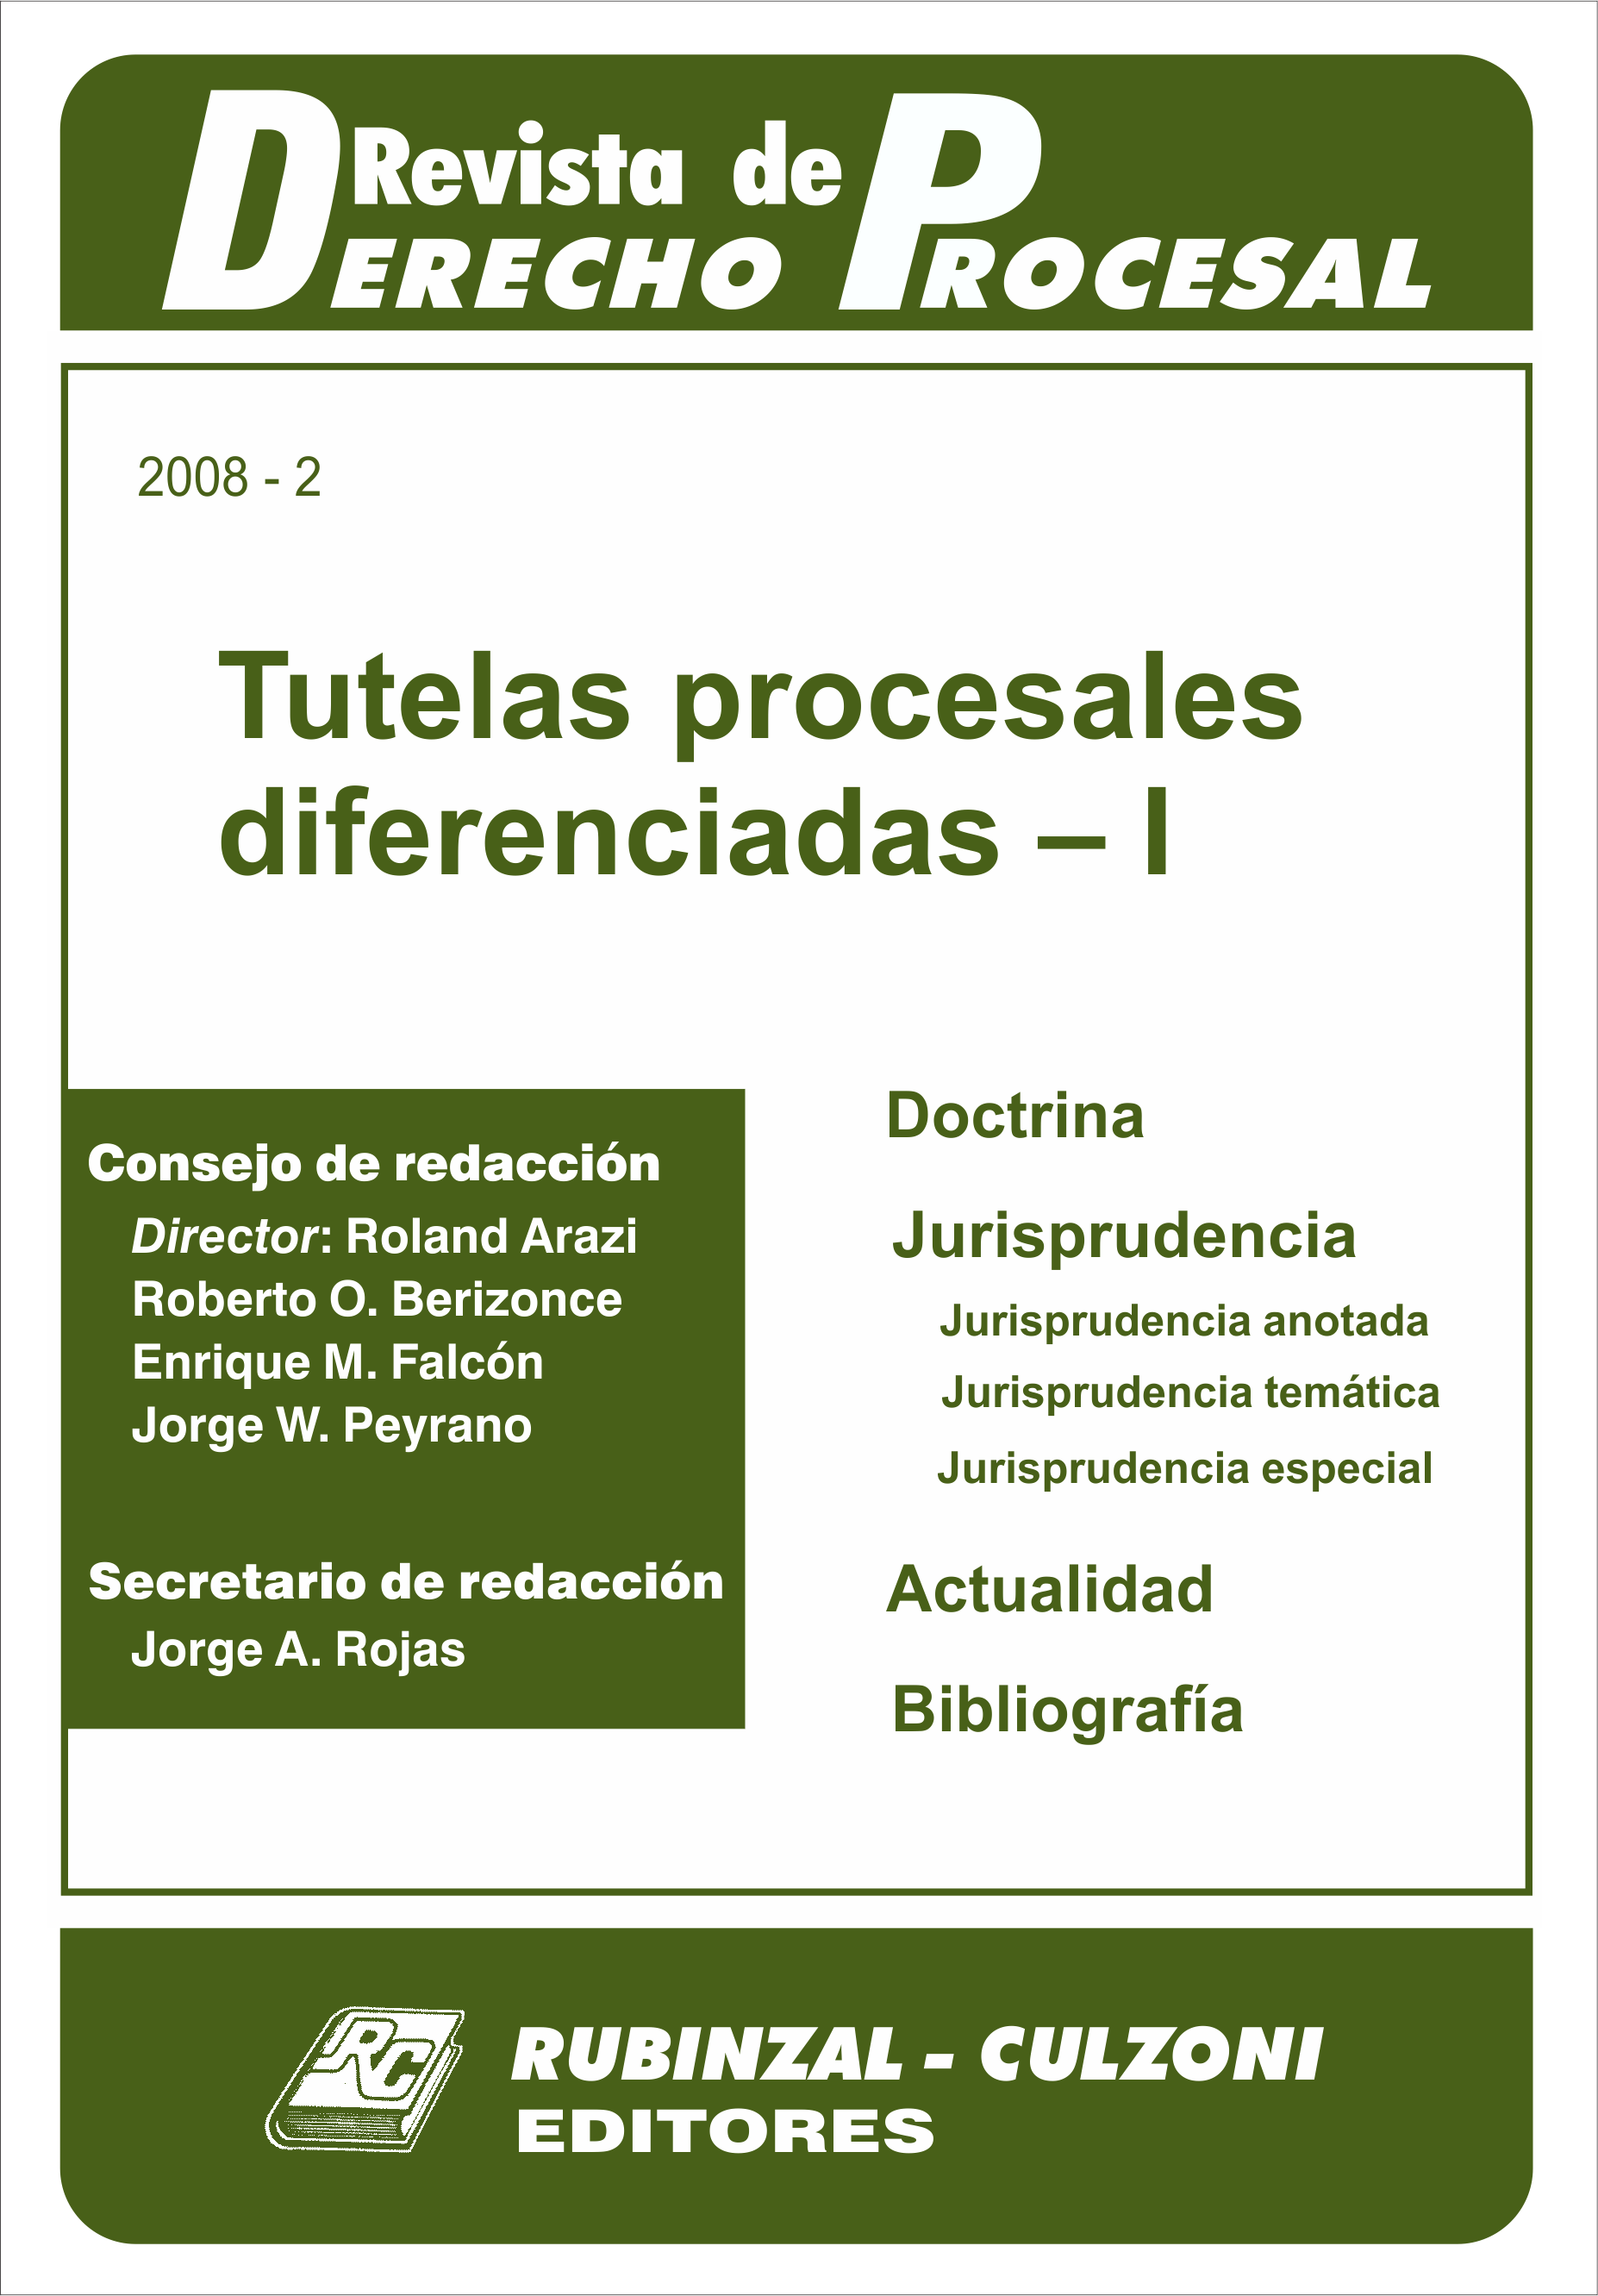 Revista de Derecho Procesal - Tutelas procesales diferenciadas - I.